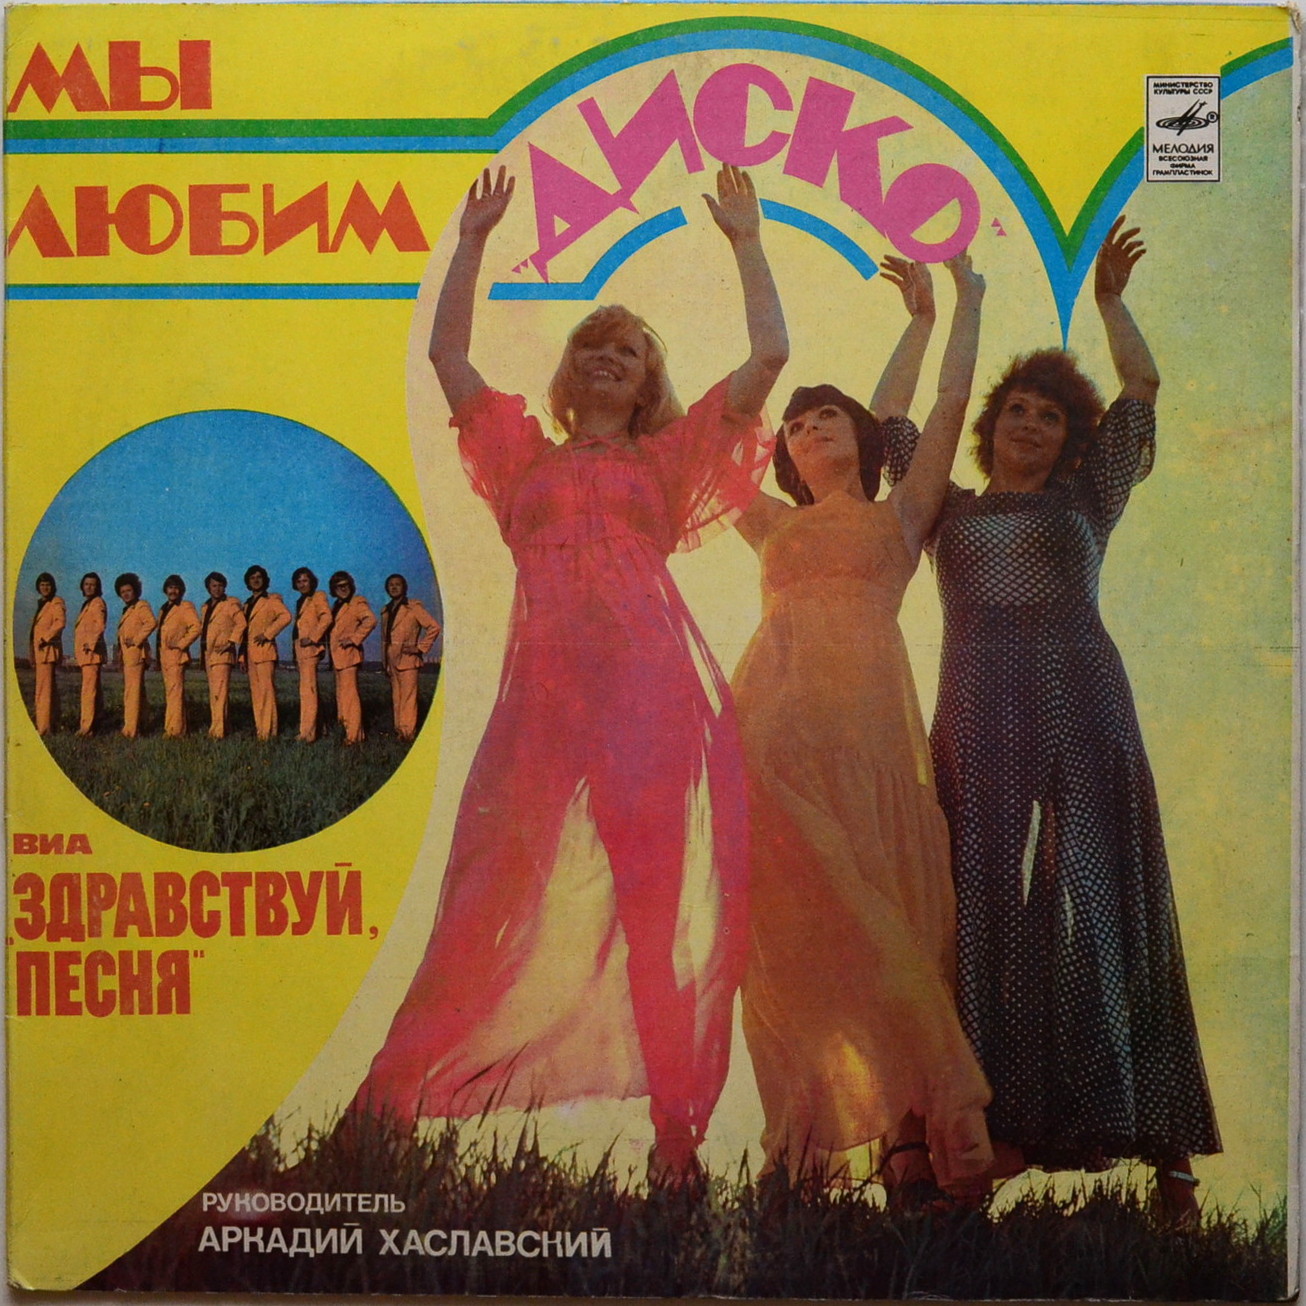 ВИА "Здравствуй, песня", руководитель Аркадий ХАСЛАВСКИЙ. «Мы любим диско»